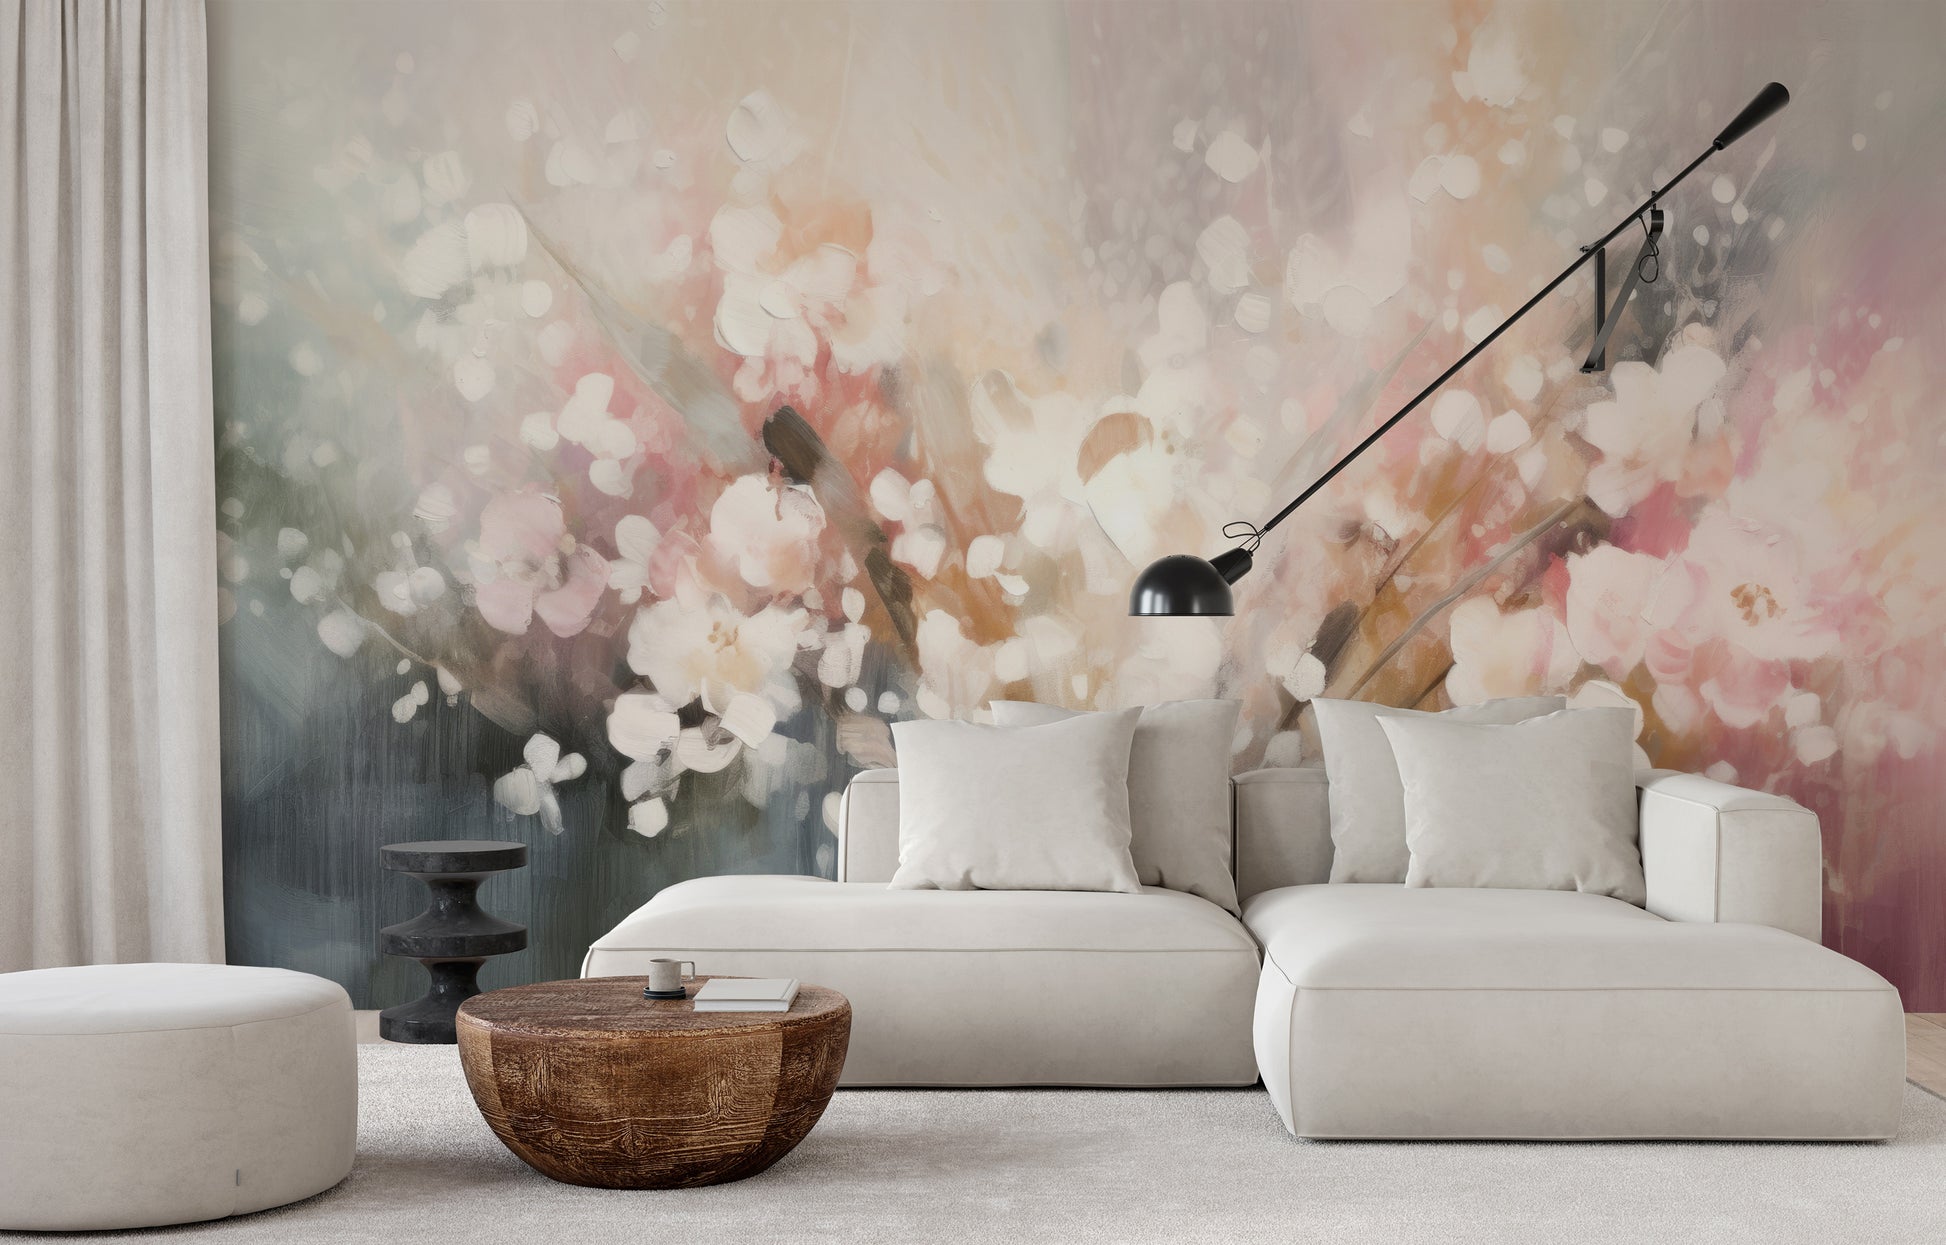 Wzór fototapety malowanej o nazwie Blossom Softness pokazanej w aranżacji wnętrza.